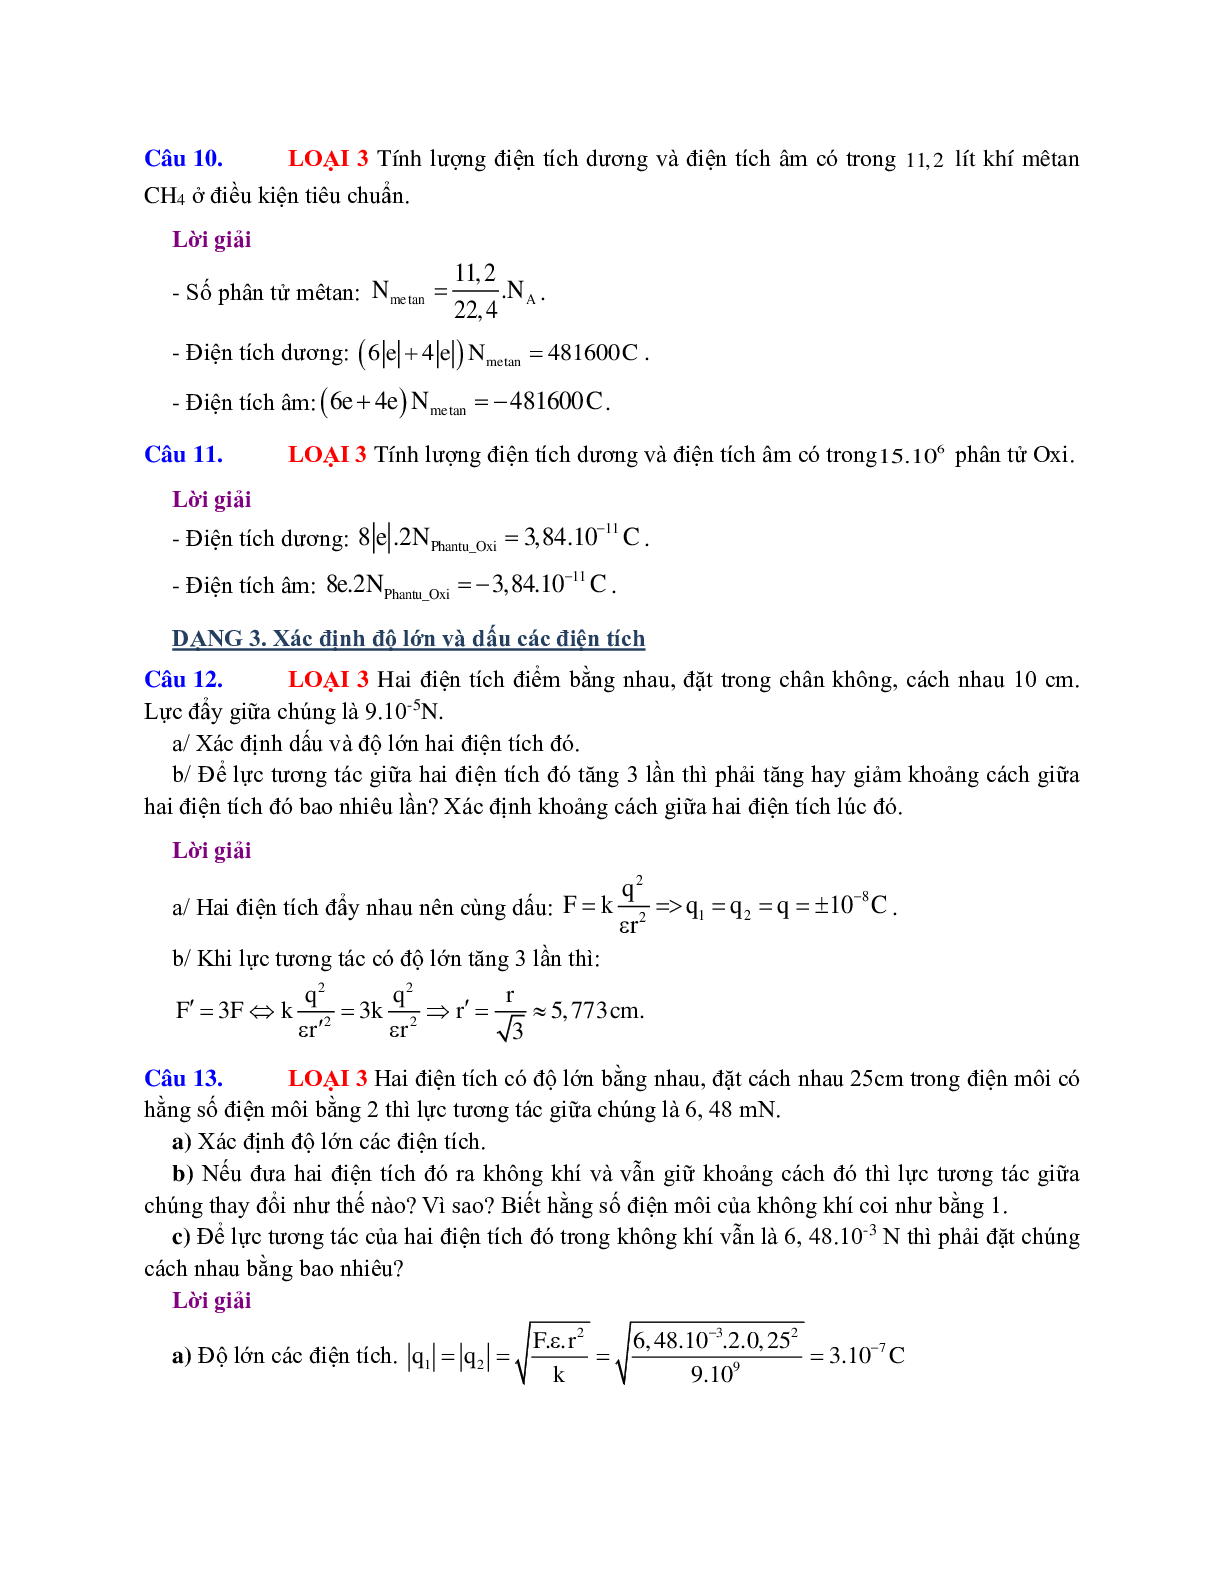 Chuyên đề Điện tích - Điện trường môn Vật lý lớp 11 (trang 5)